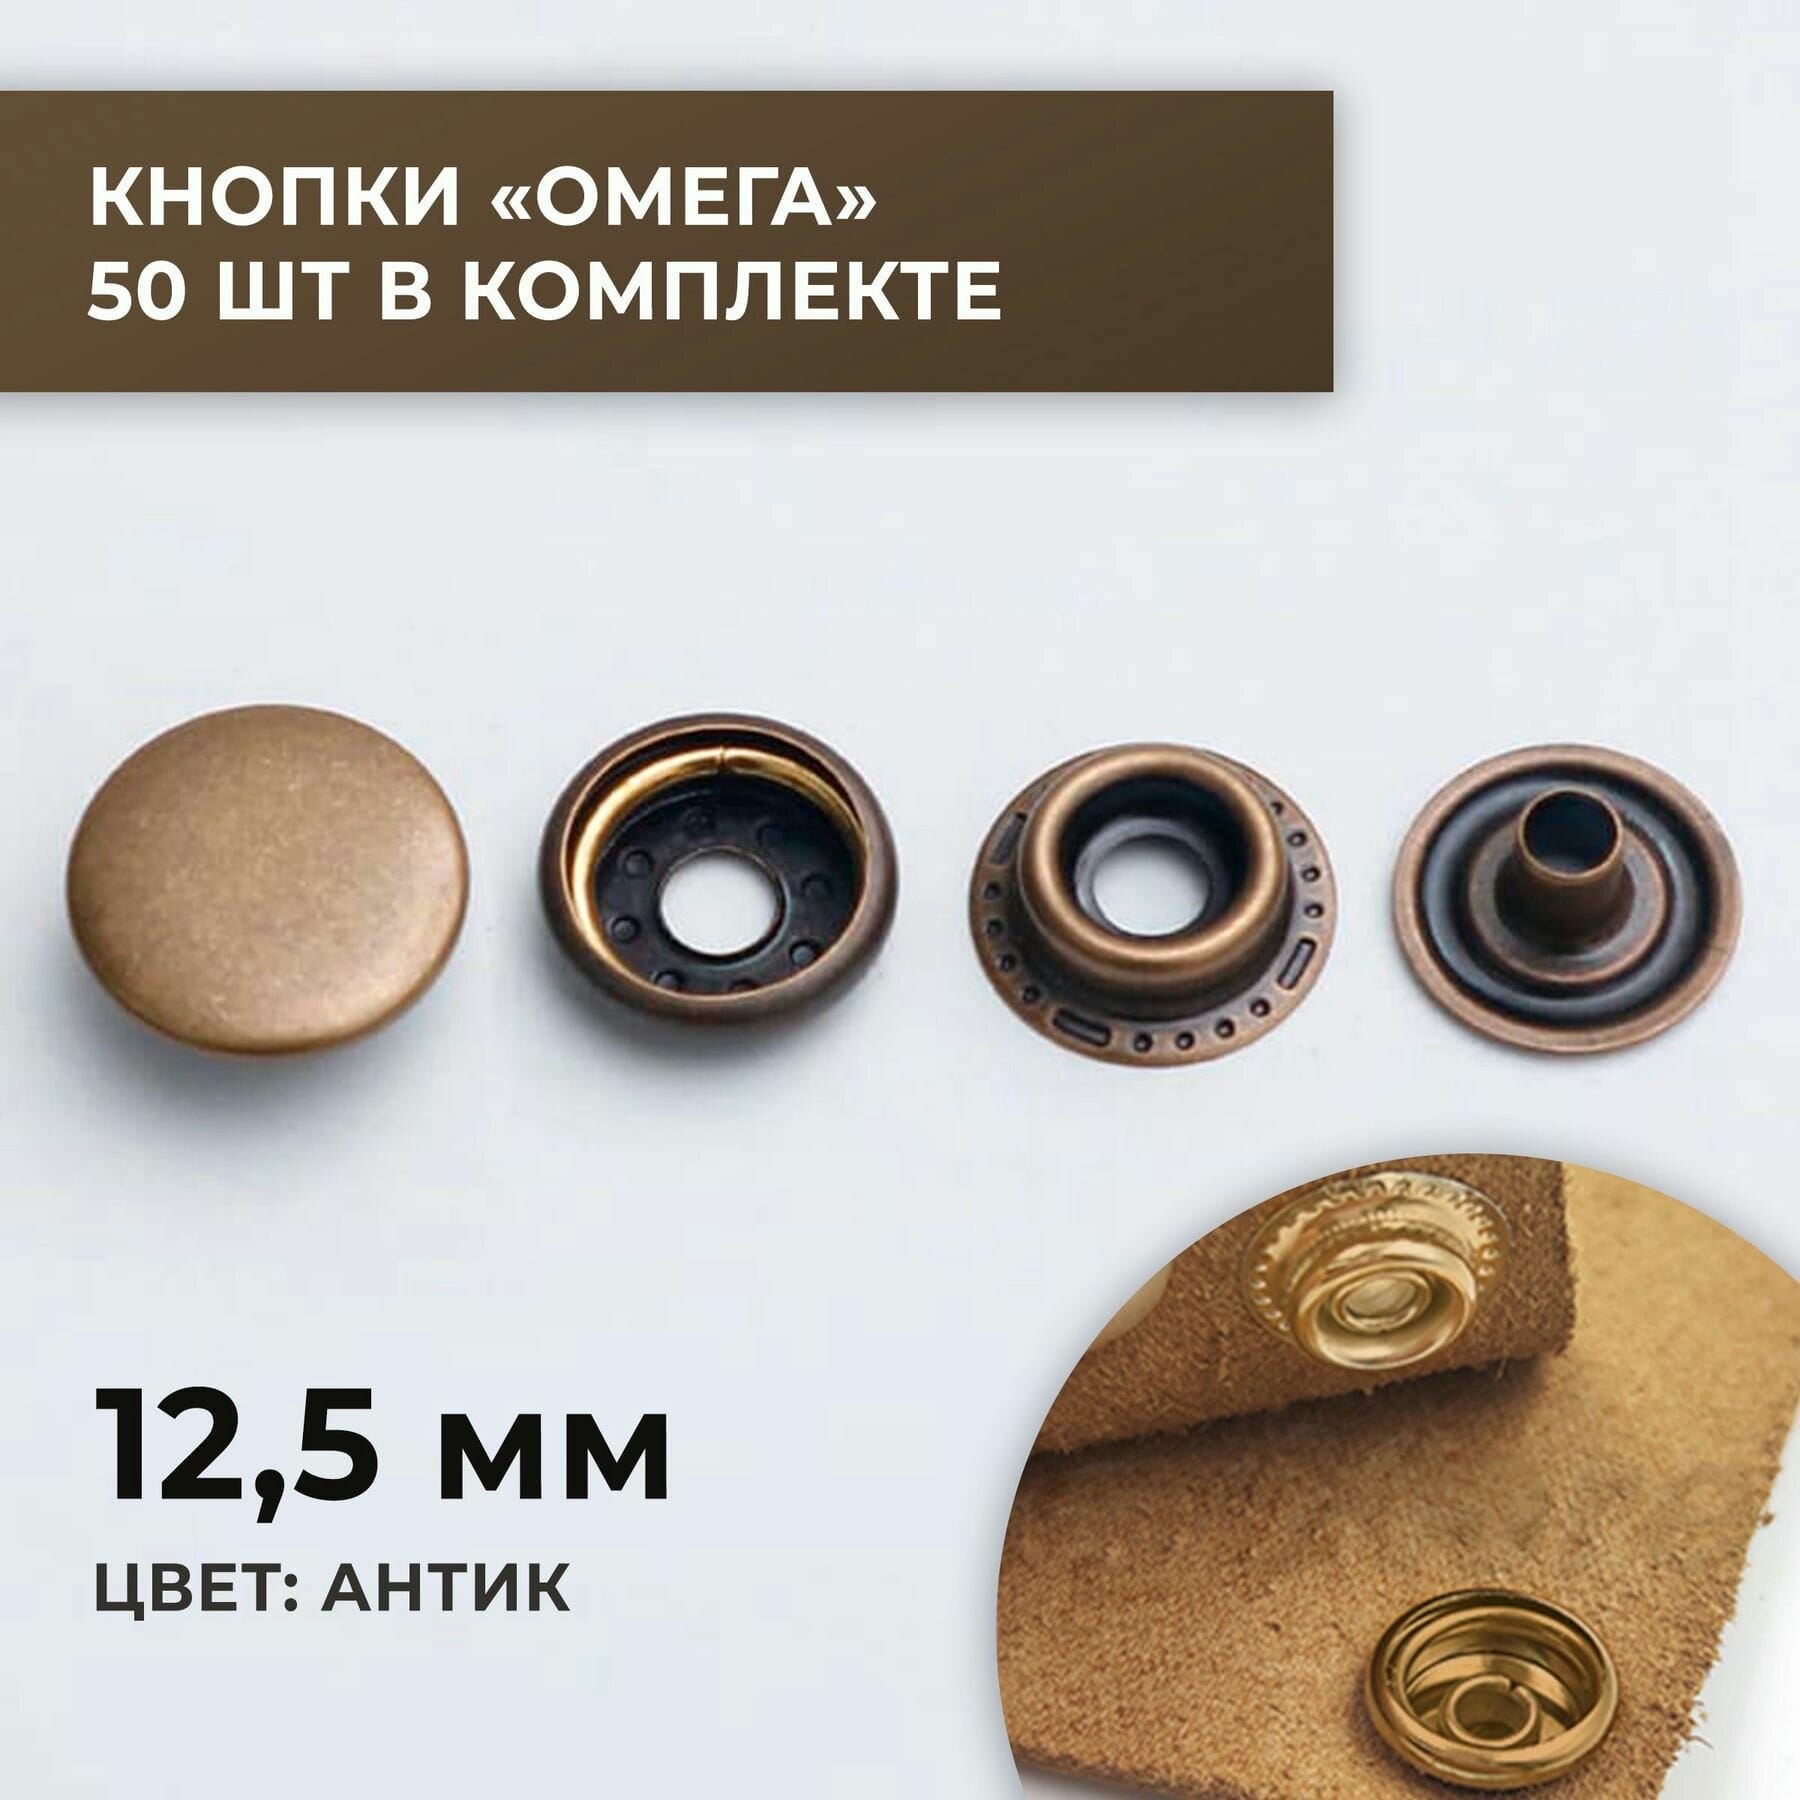 Кнопки "Омега", 12,5 мм, антик, 50 шт